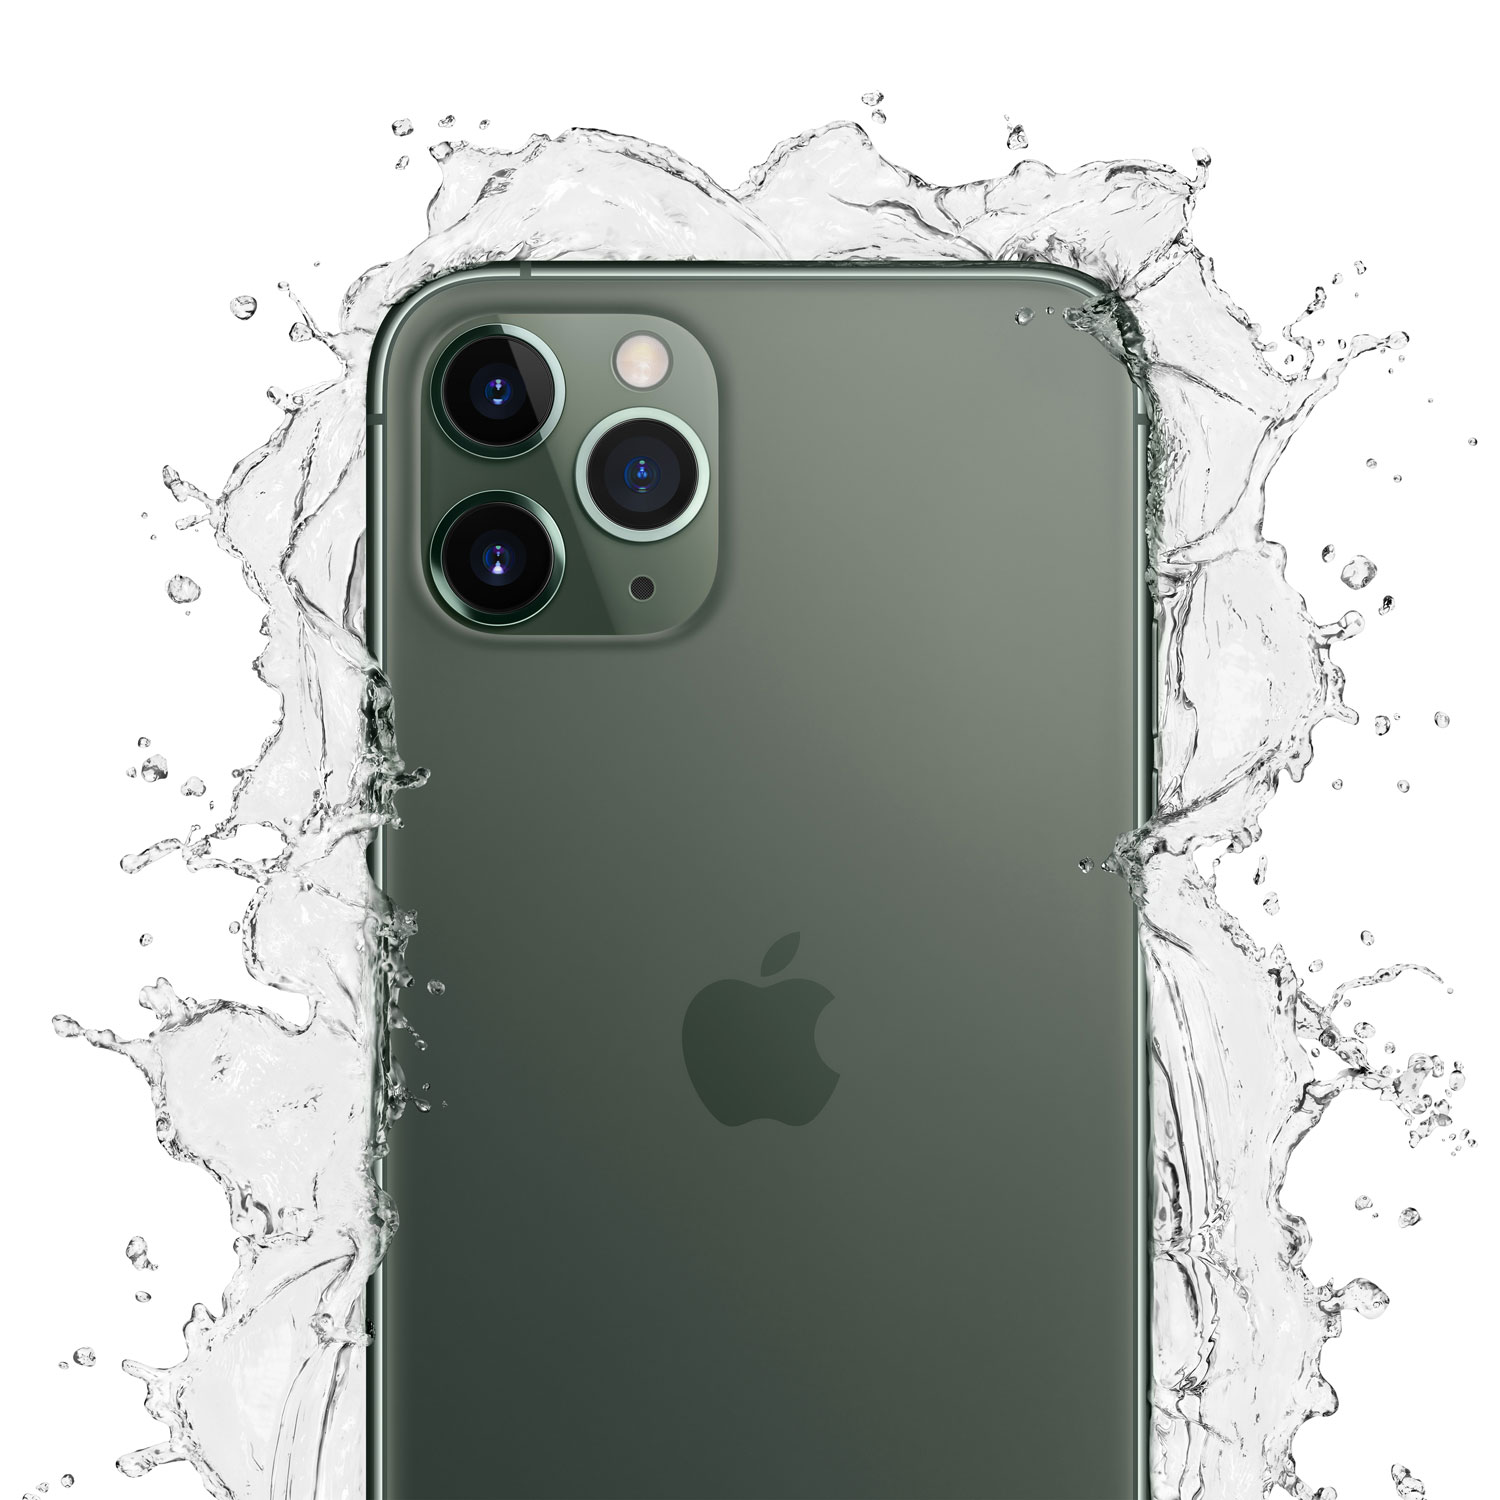 超熱 iPhone - iPhone11 Pro ミッドナイトグリーン 512GB 